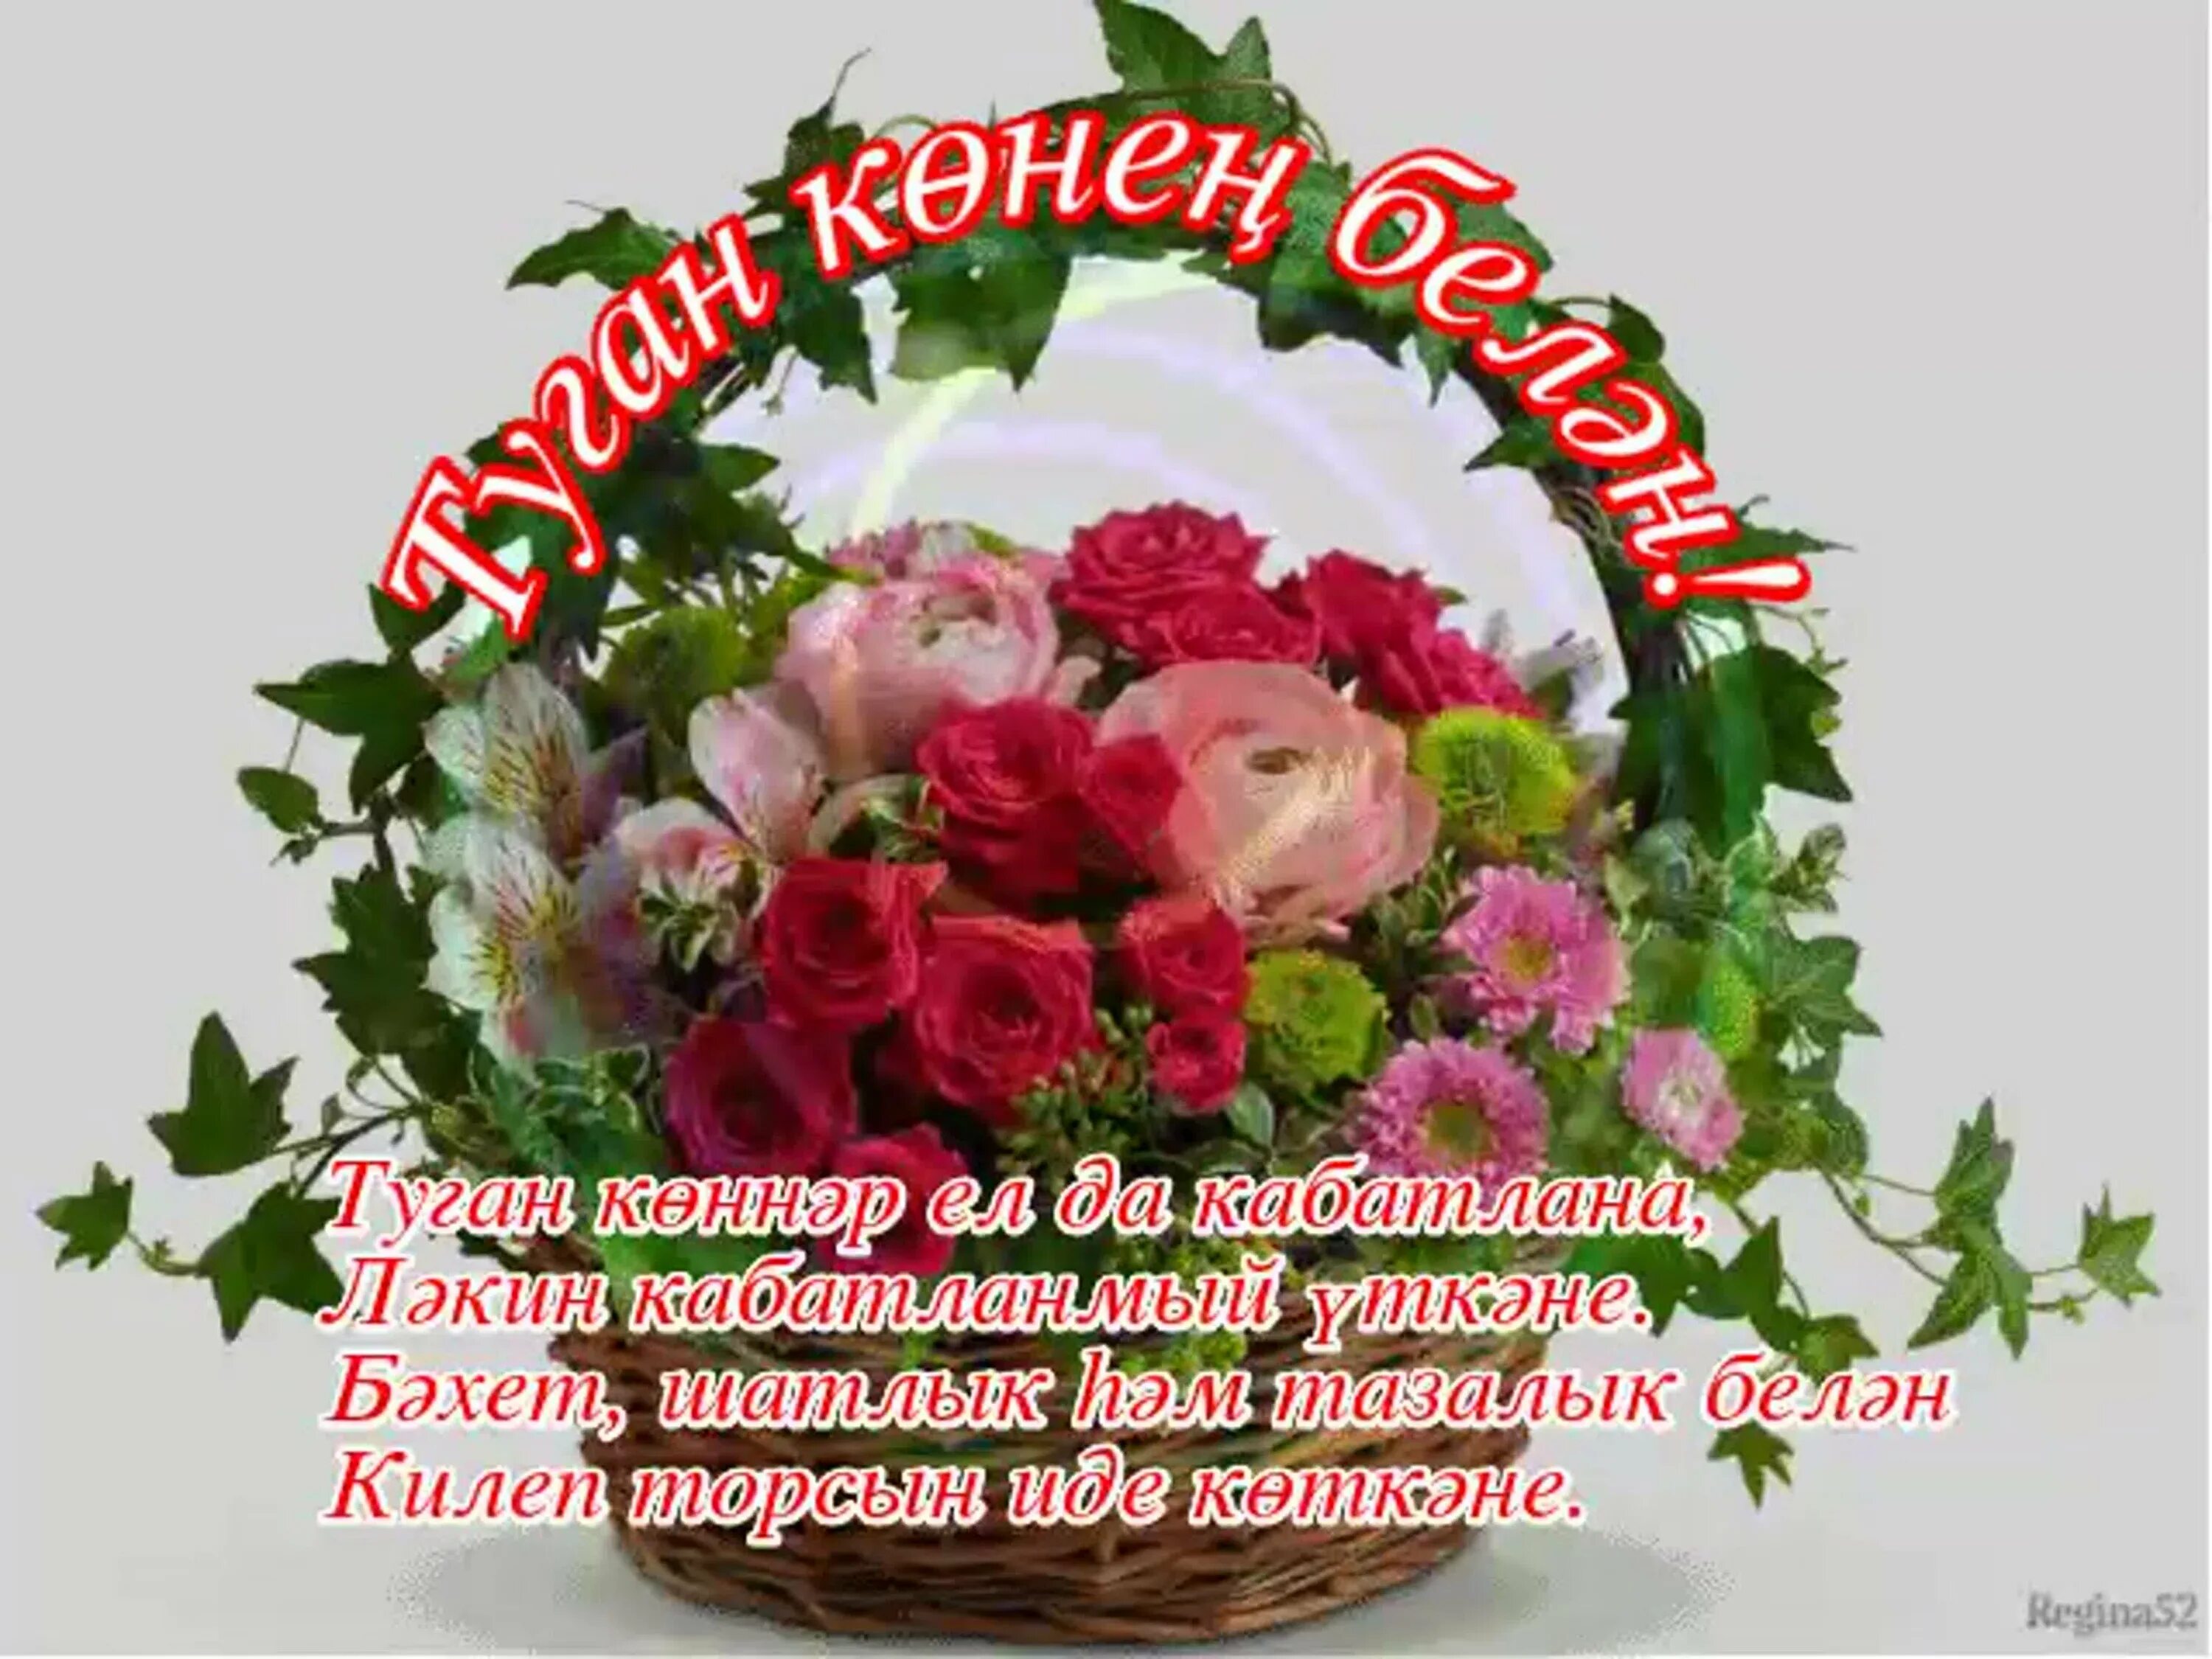 С днем рождения. Поздравления с днём рождения на татарском языке. Татарские поздравления с днем рождения. Открытки поздравления на татарском языке.